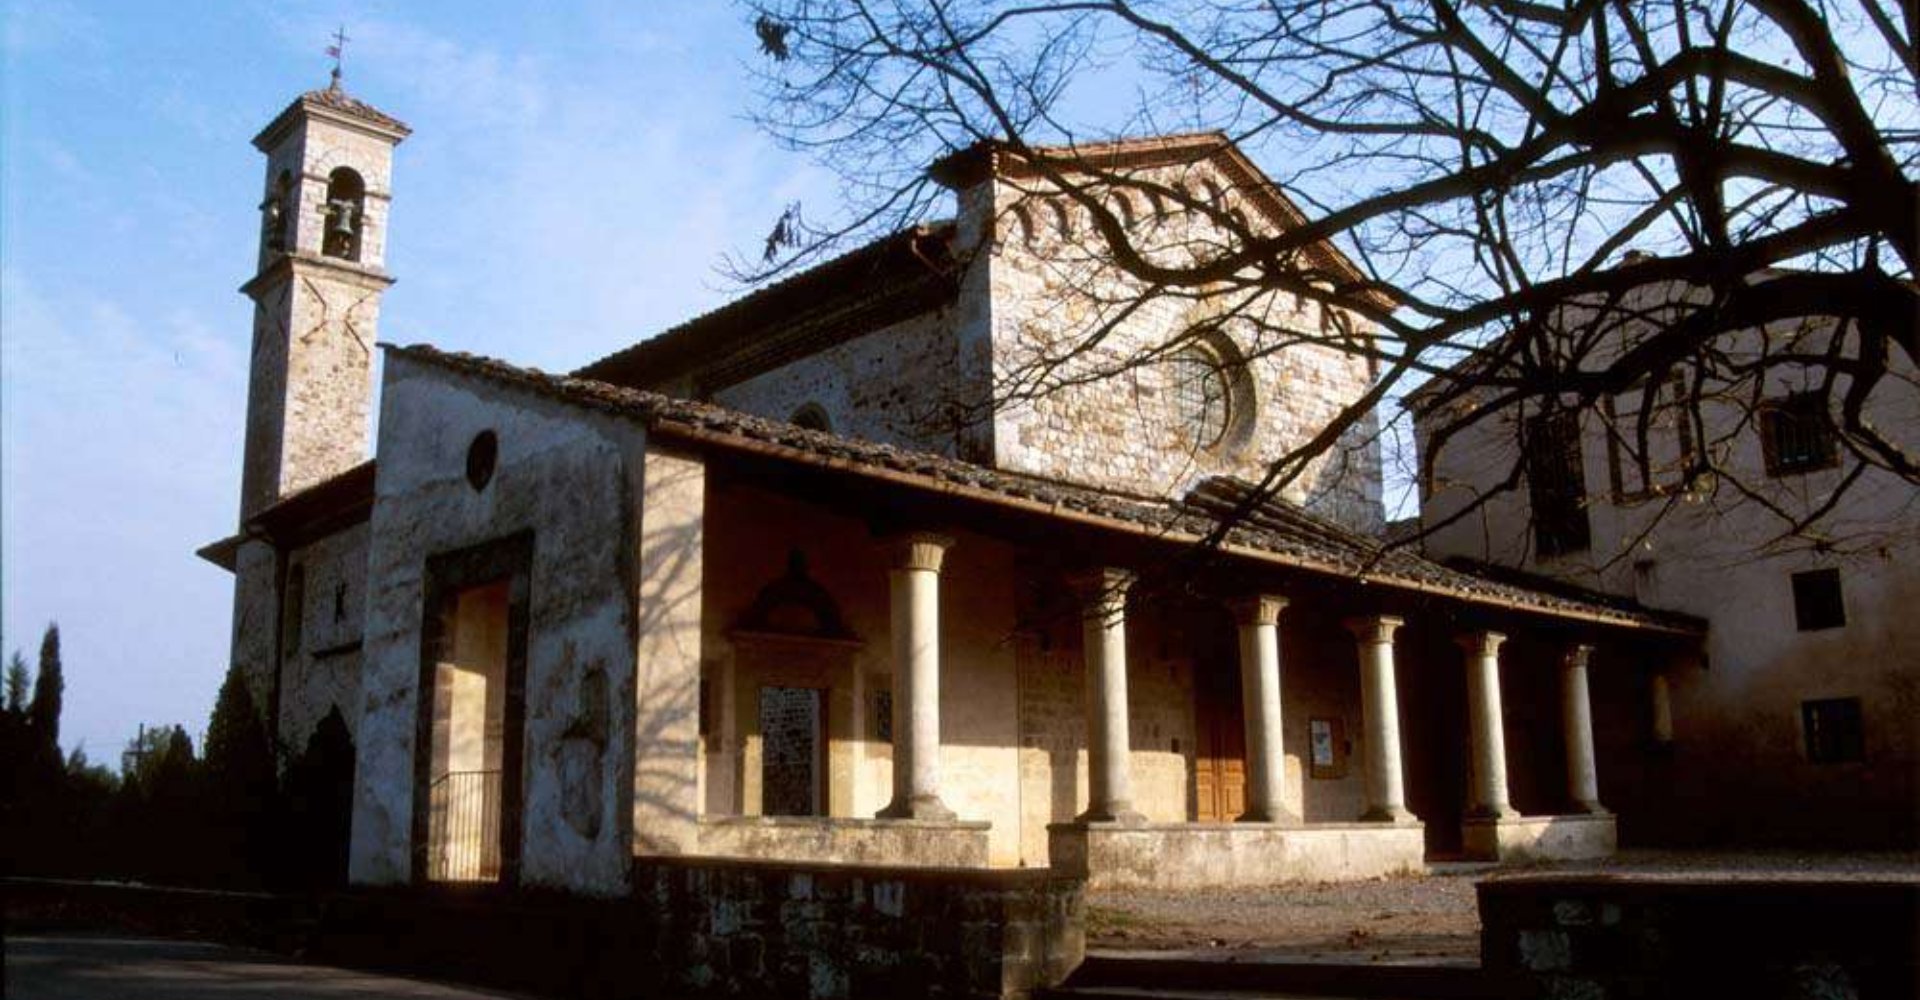 The Convent of Bosco ai Frati